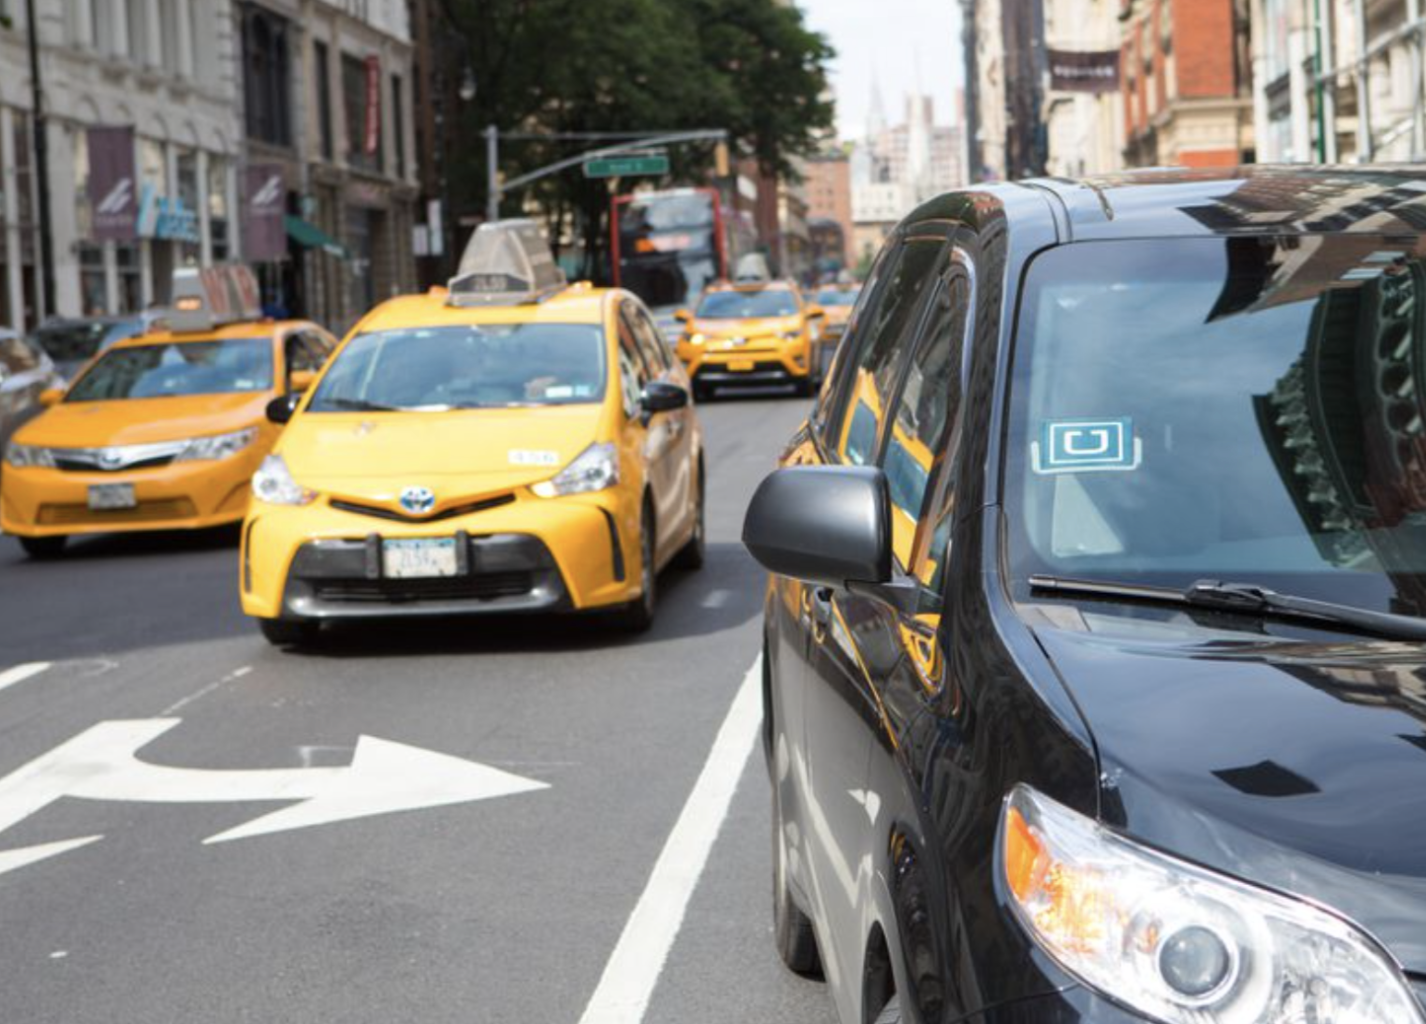 City Regs. Make Uber/Lyft Better